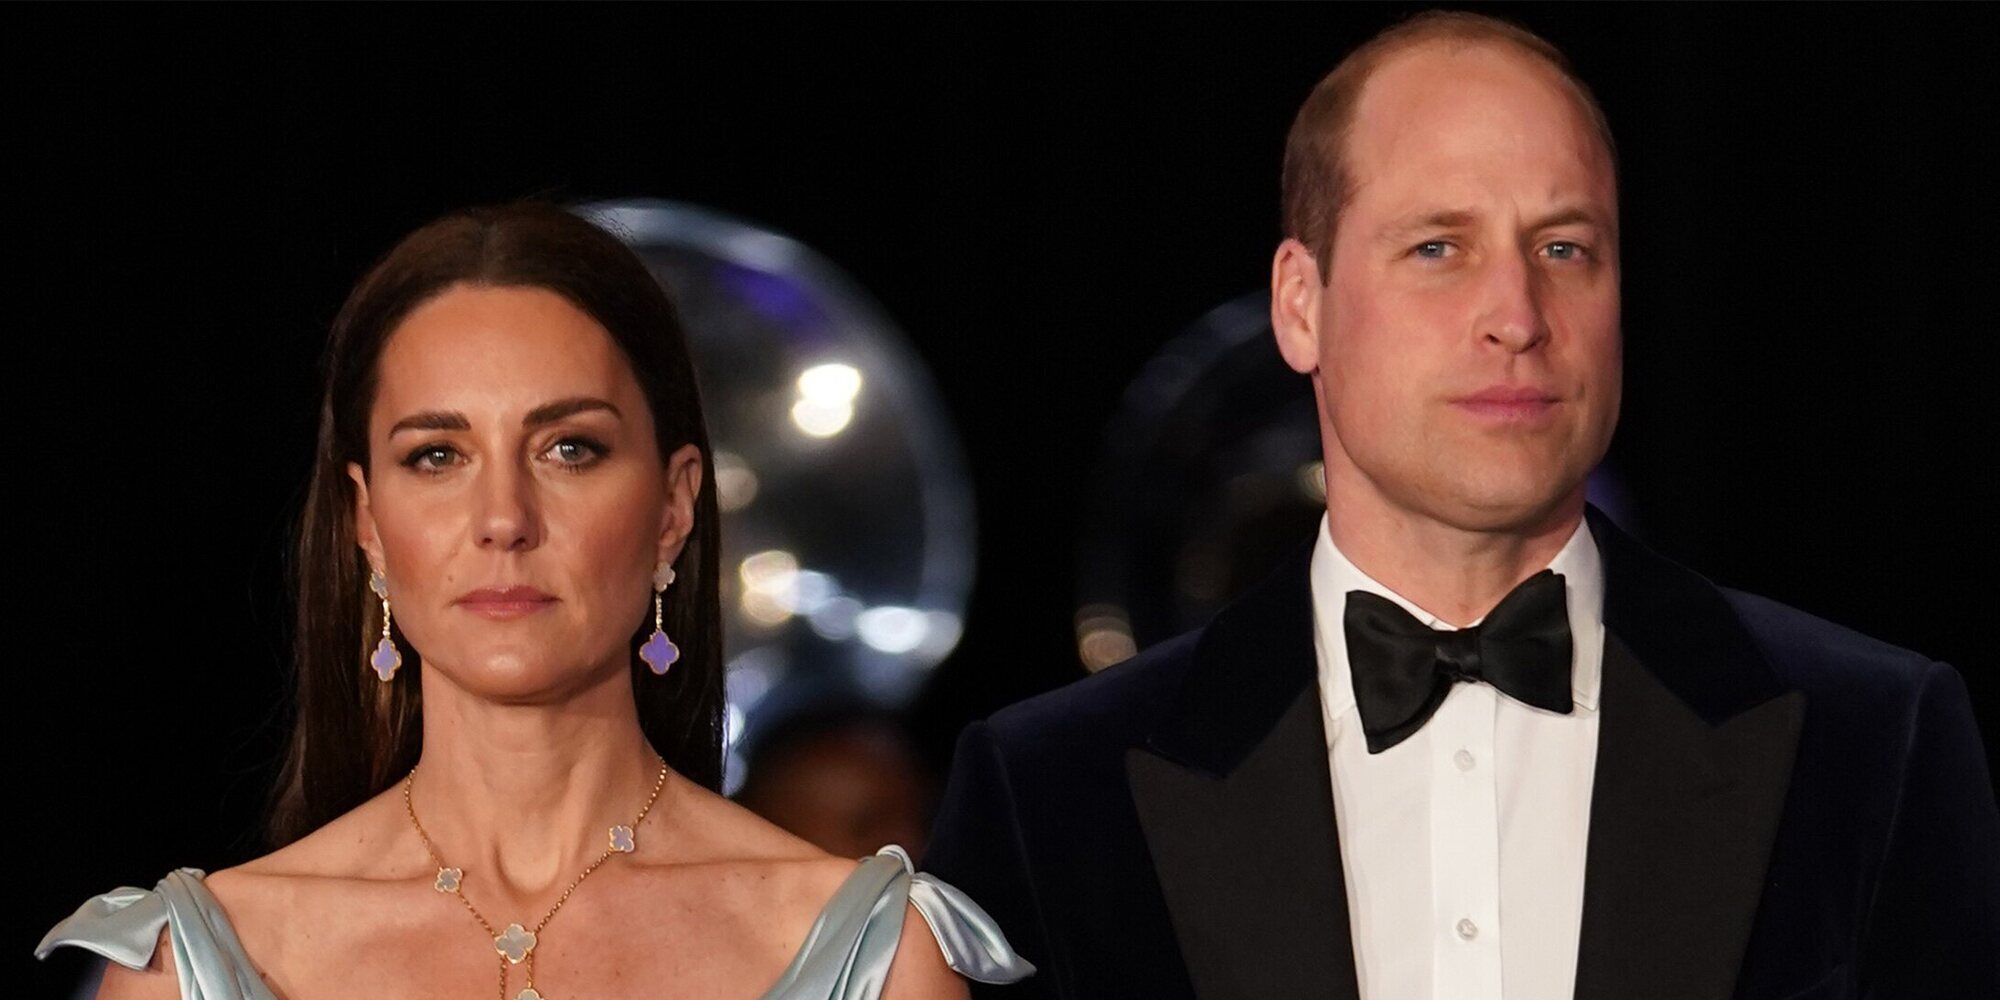 Recepción en Bahamas: De las emotivas palabras del Príncipe Guillermo al espectacular look de Kate Middleton